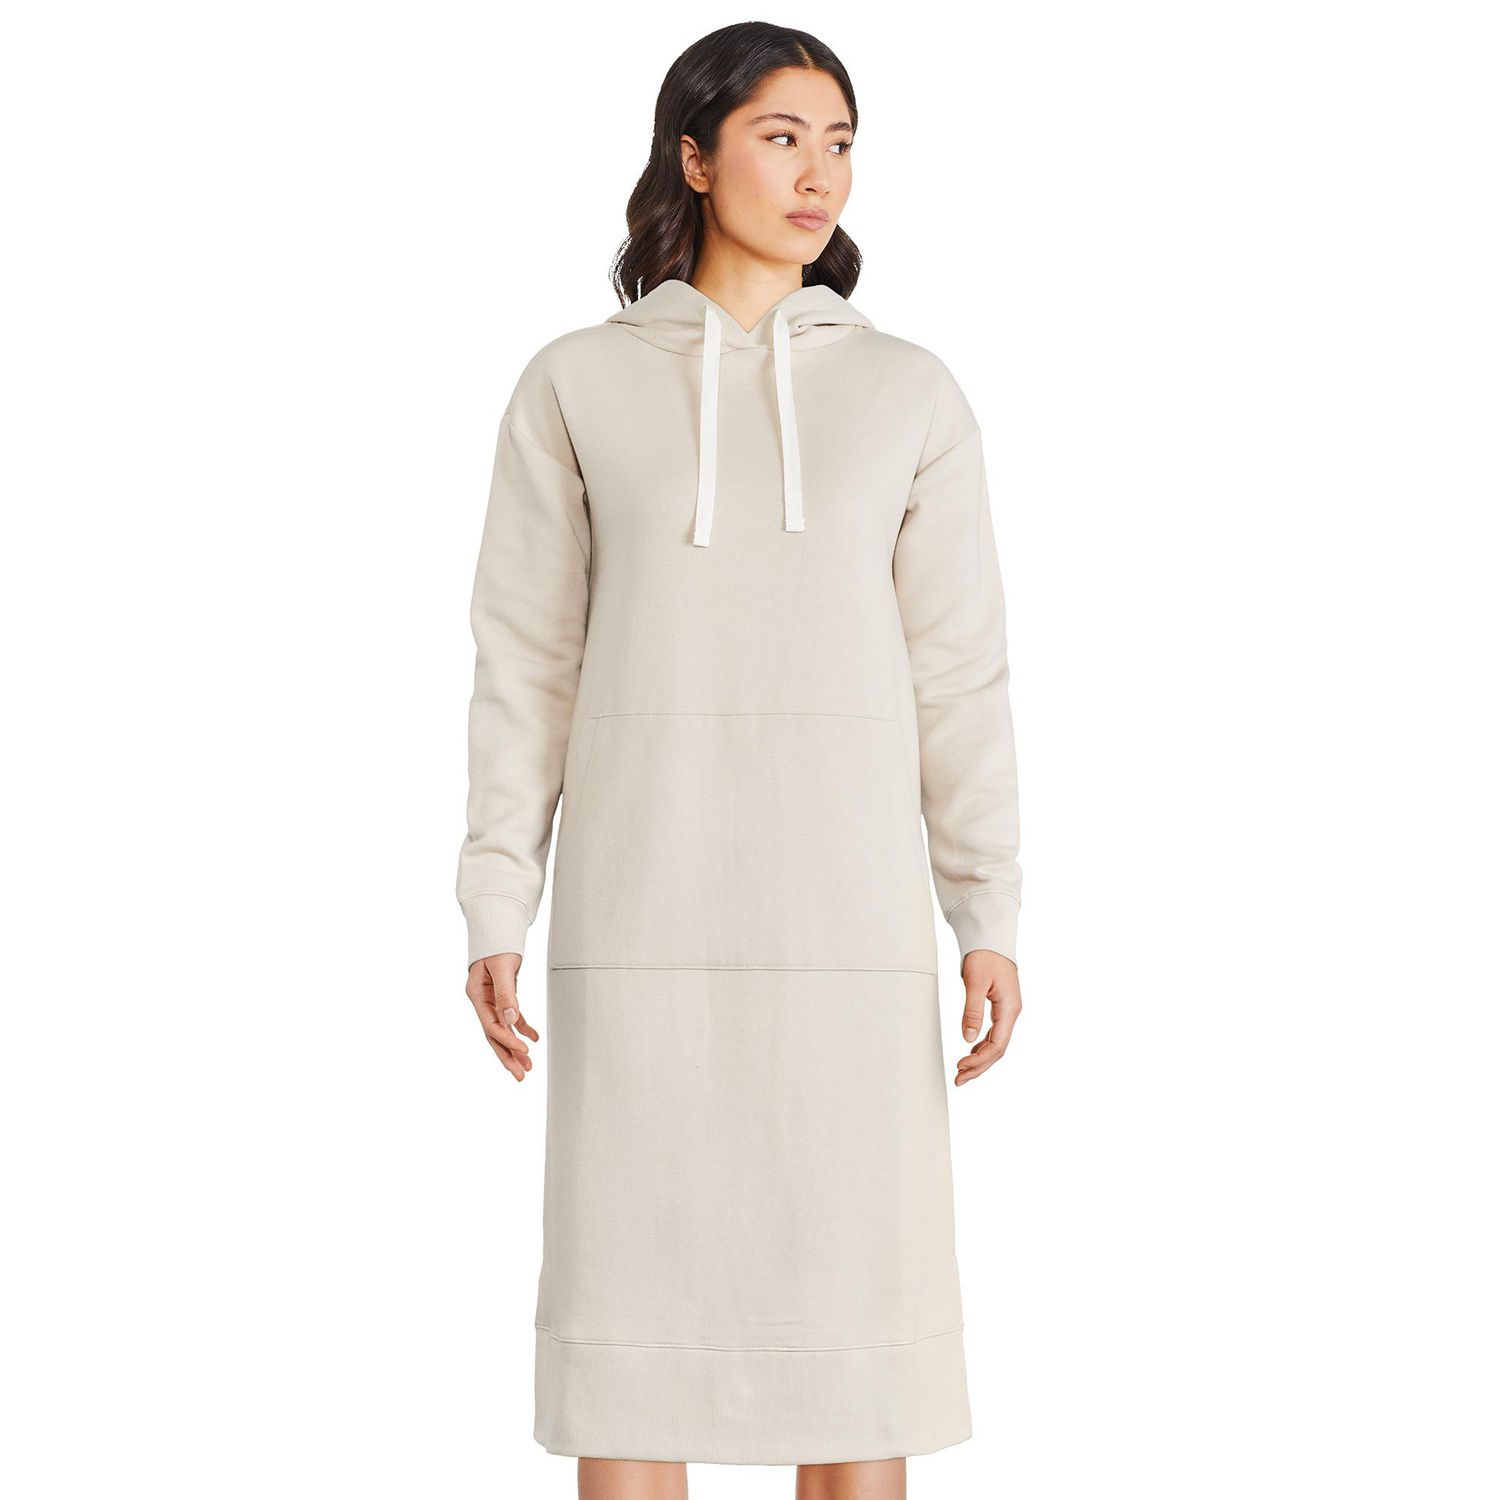 George Women's Hooded Fleece Dress 